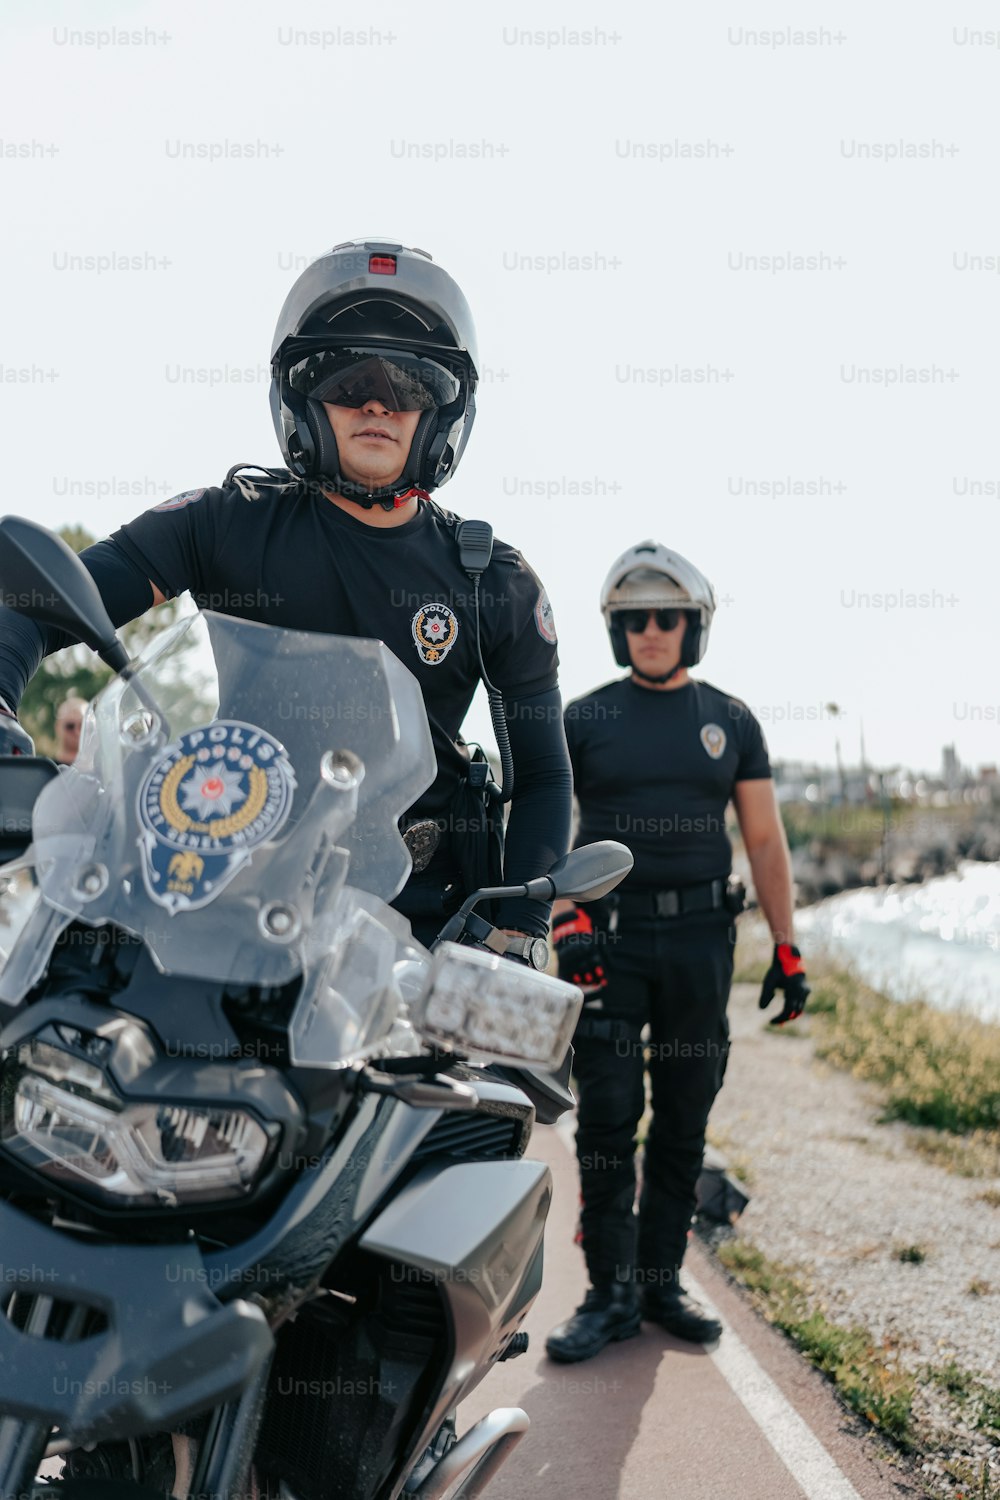 Un oficial de policía parado junto a una motocicleta